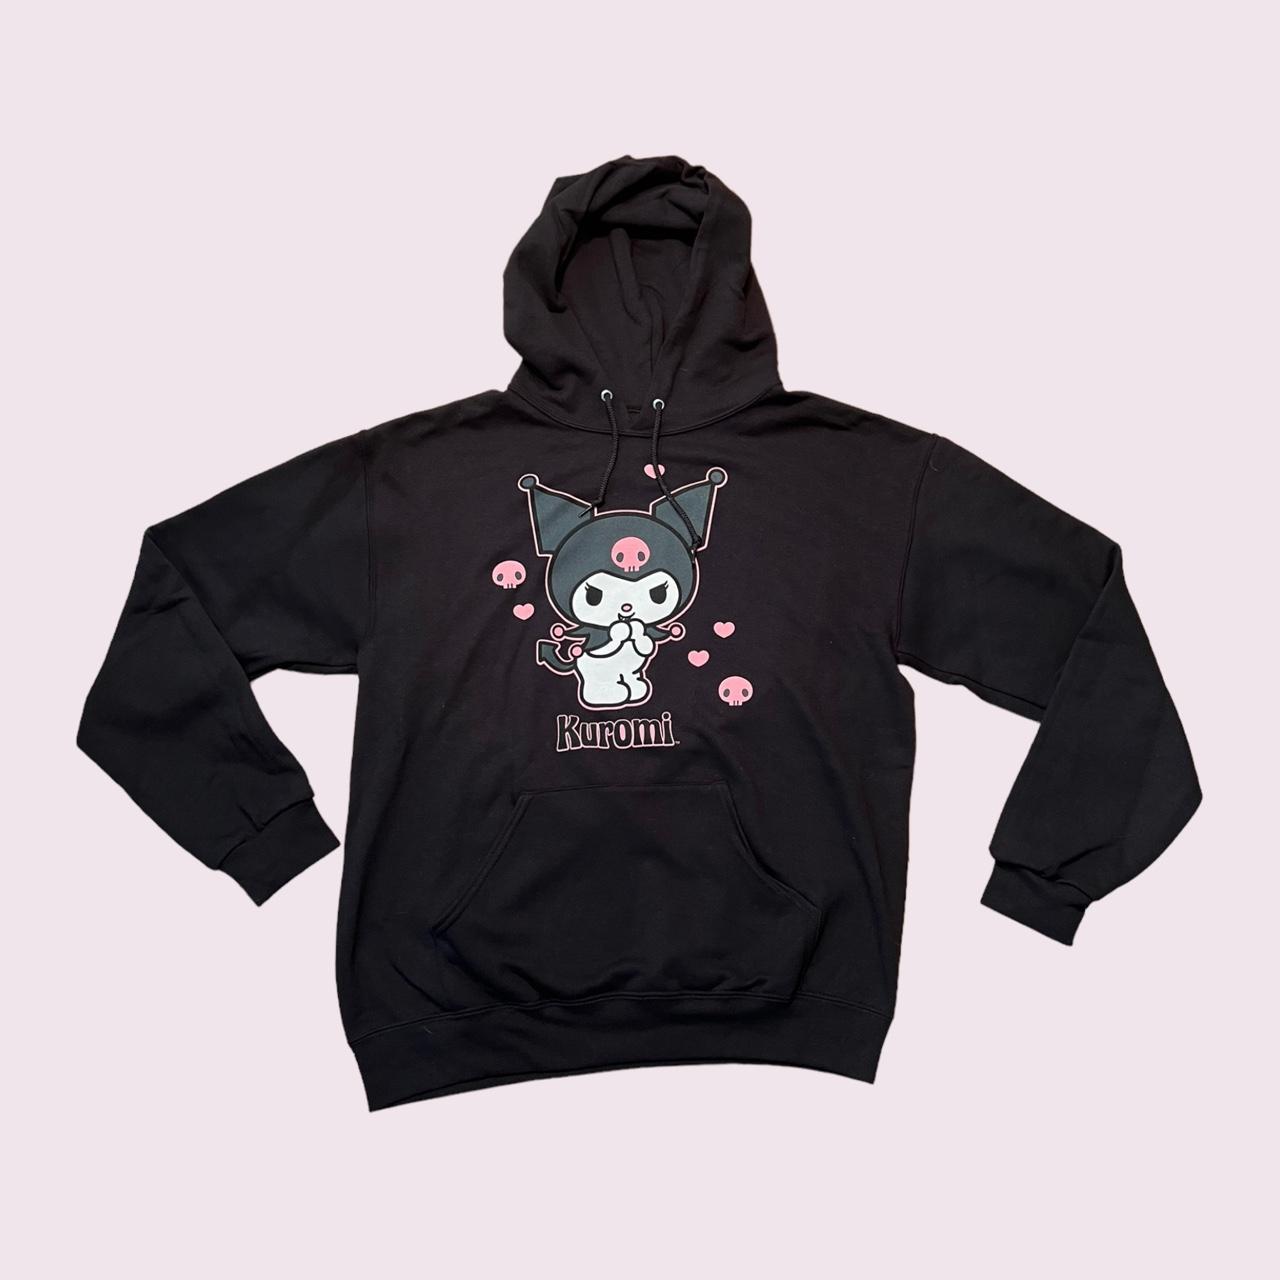 Sanrio Kuromi black and pink hoodie, size medium,... - Depop